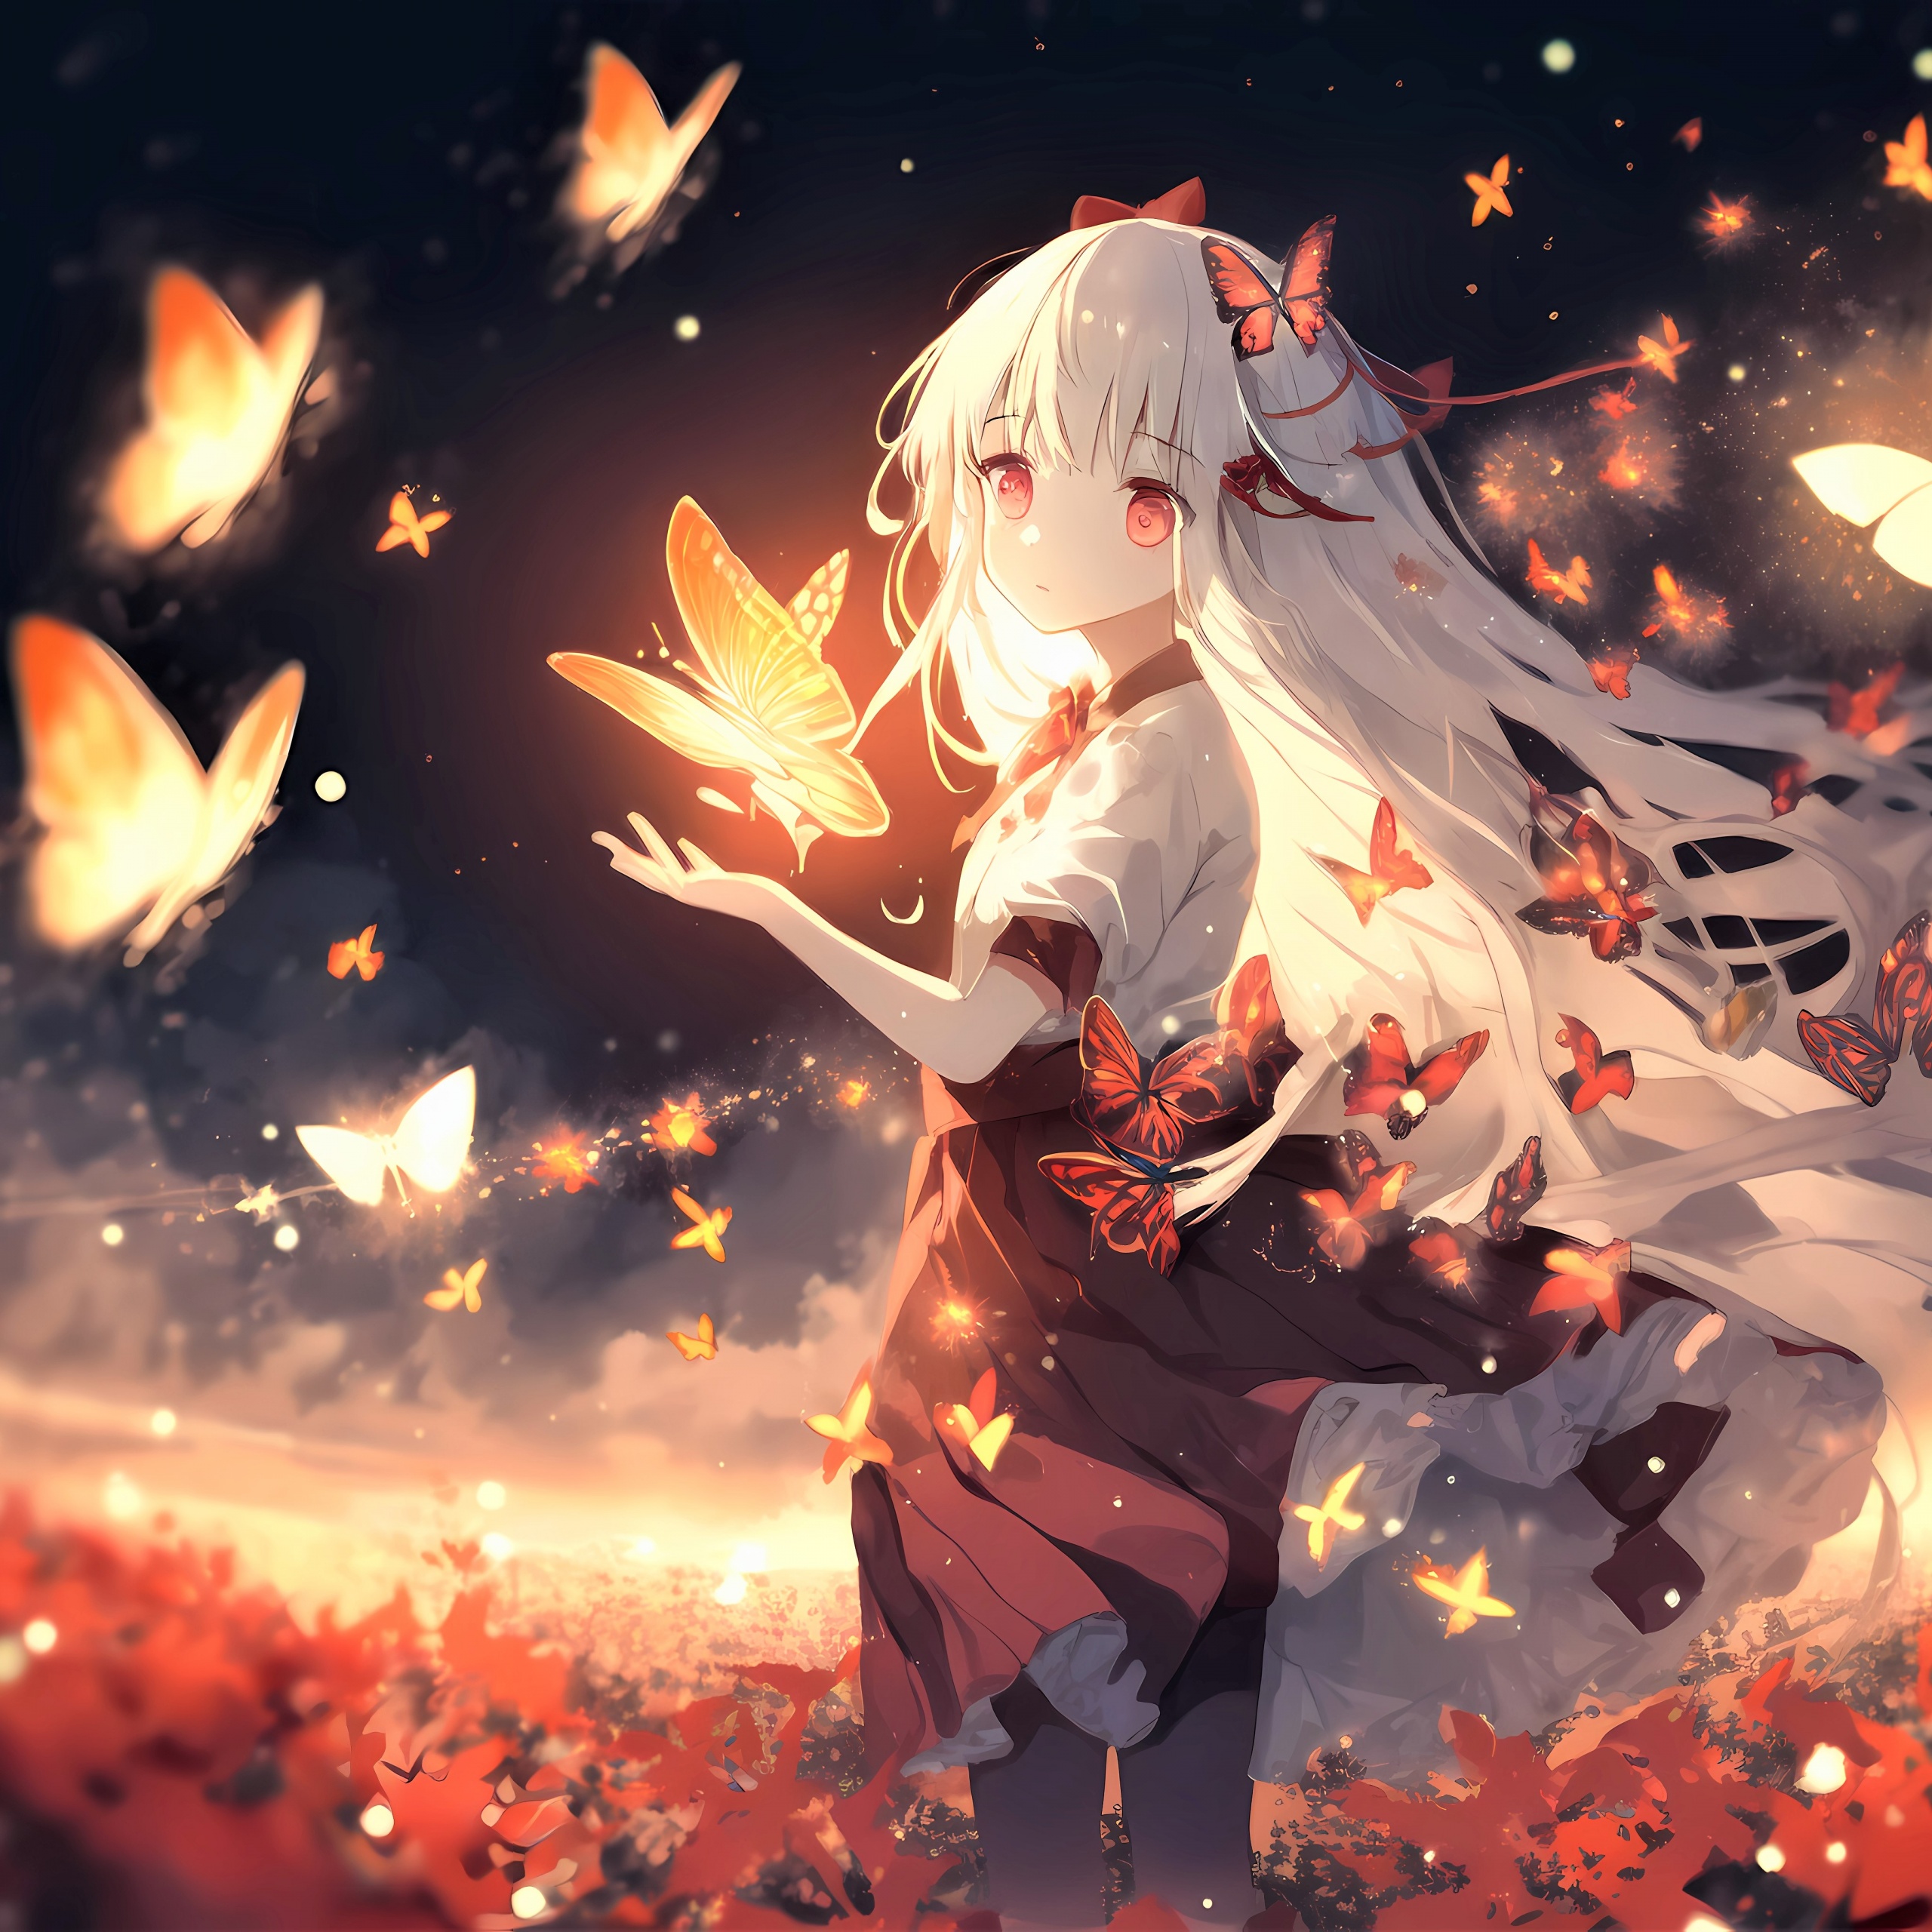 Anime Girl & Butterflies Aesthetic Wallpaper - Anime Girl Wallpaper